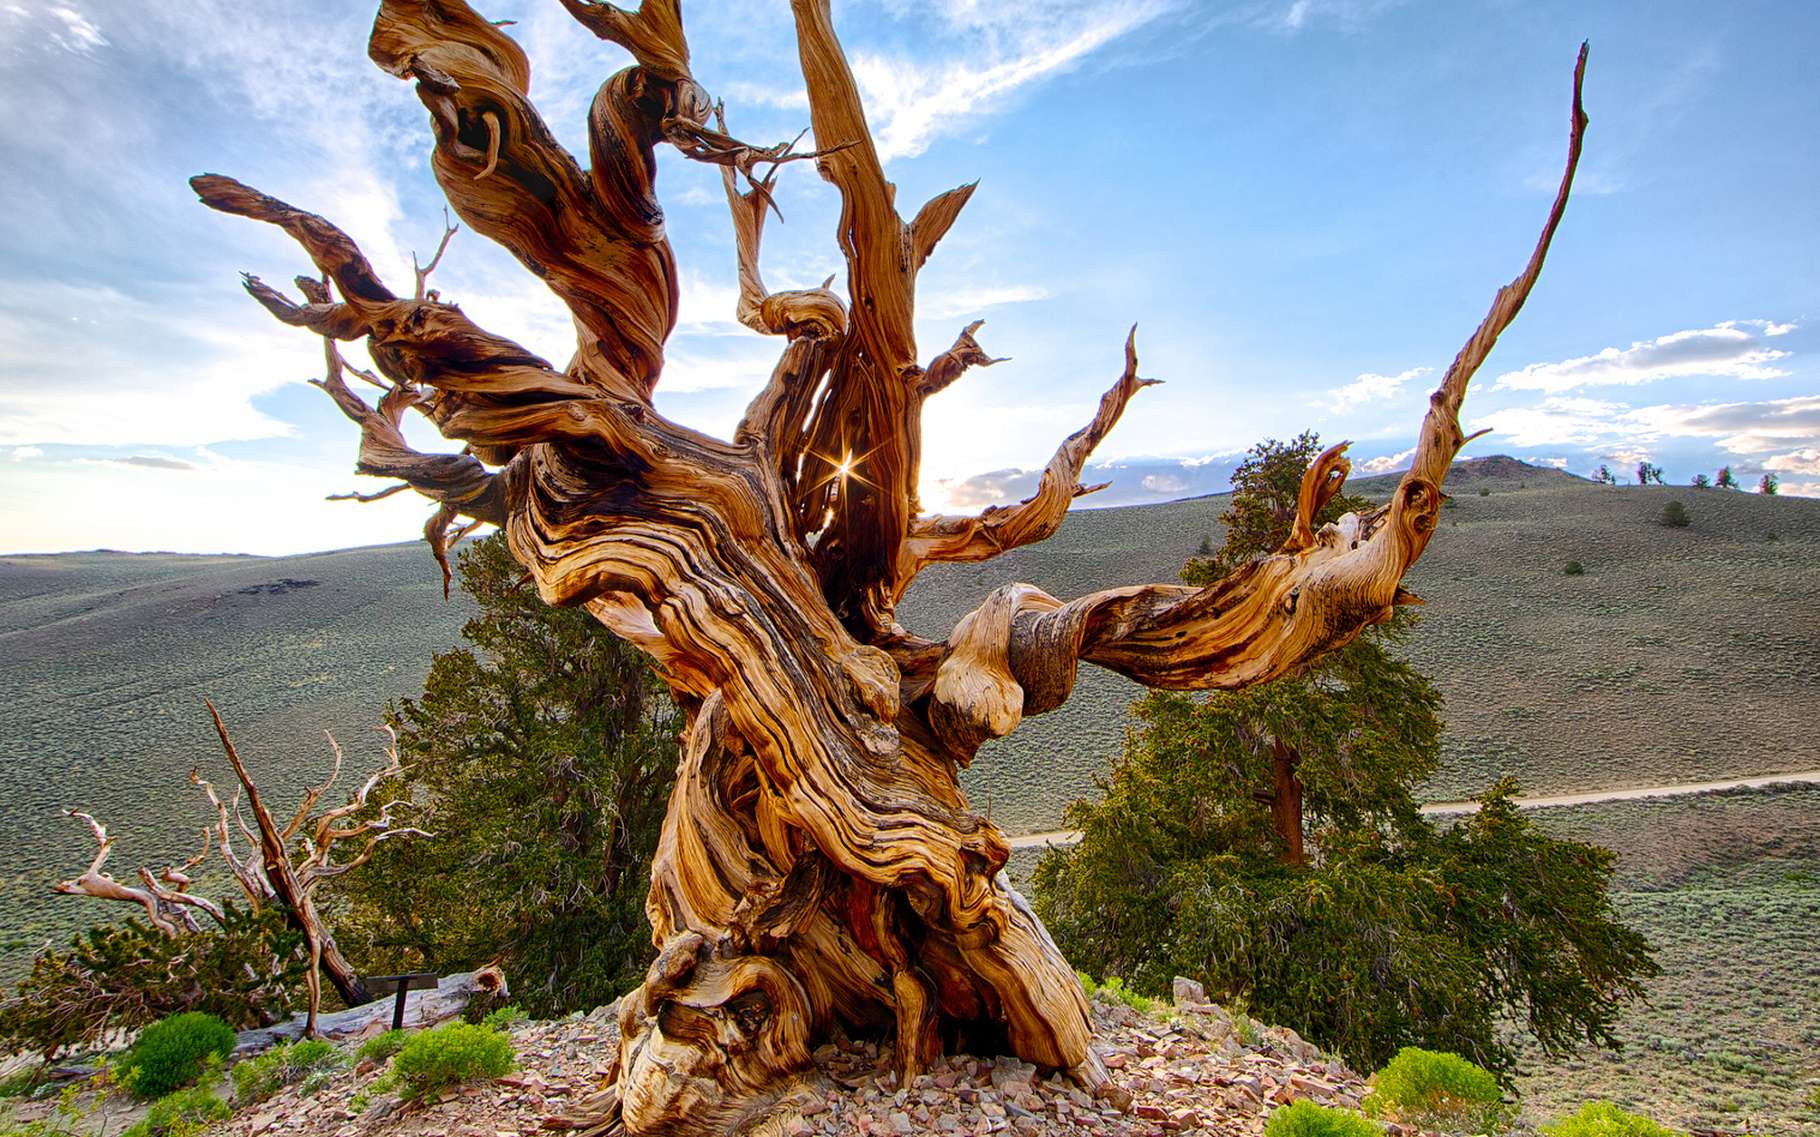 Le plus vieux pin Bristlecone (Pinus longaeva) connu aurait atteint l'âge de 4.900 ans, en Californie. Il a été abattu en 1964. © Chao Yen, Flickr, CC by-nd 2.0